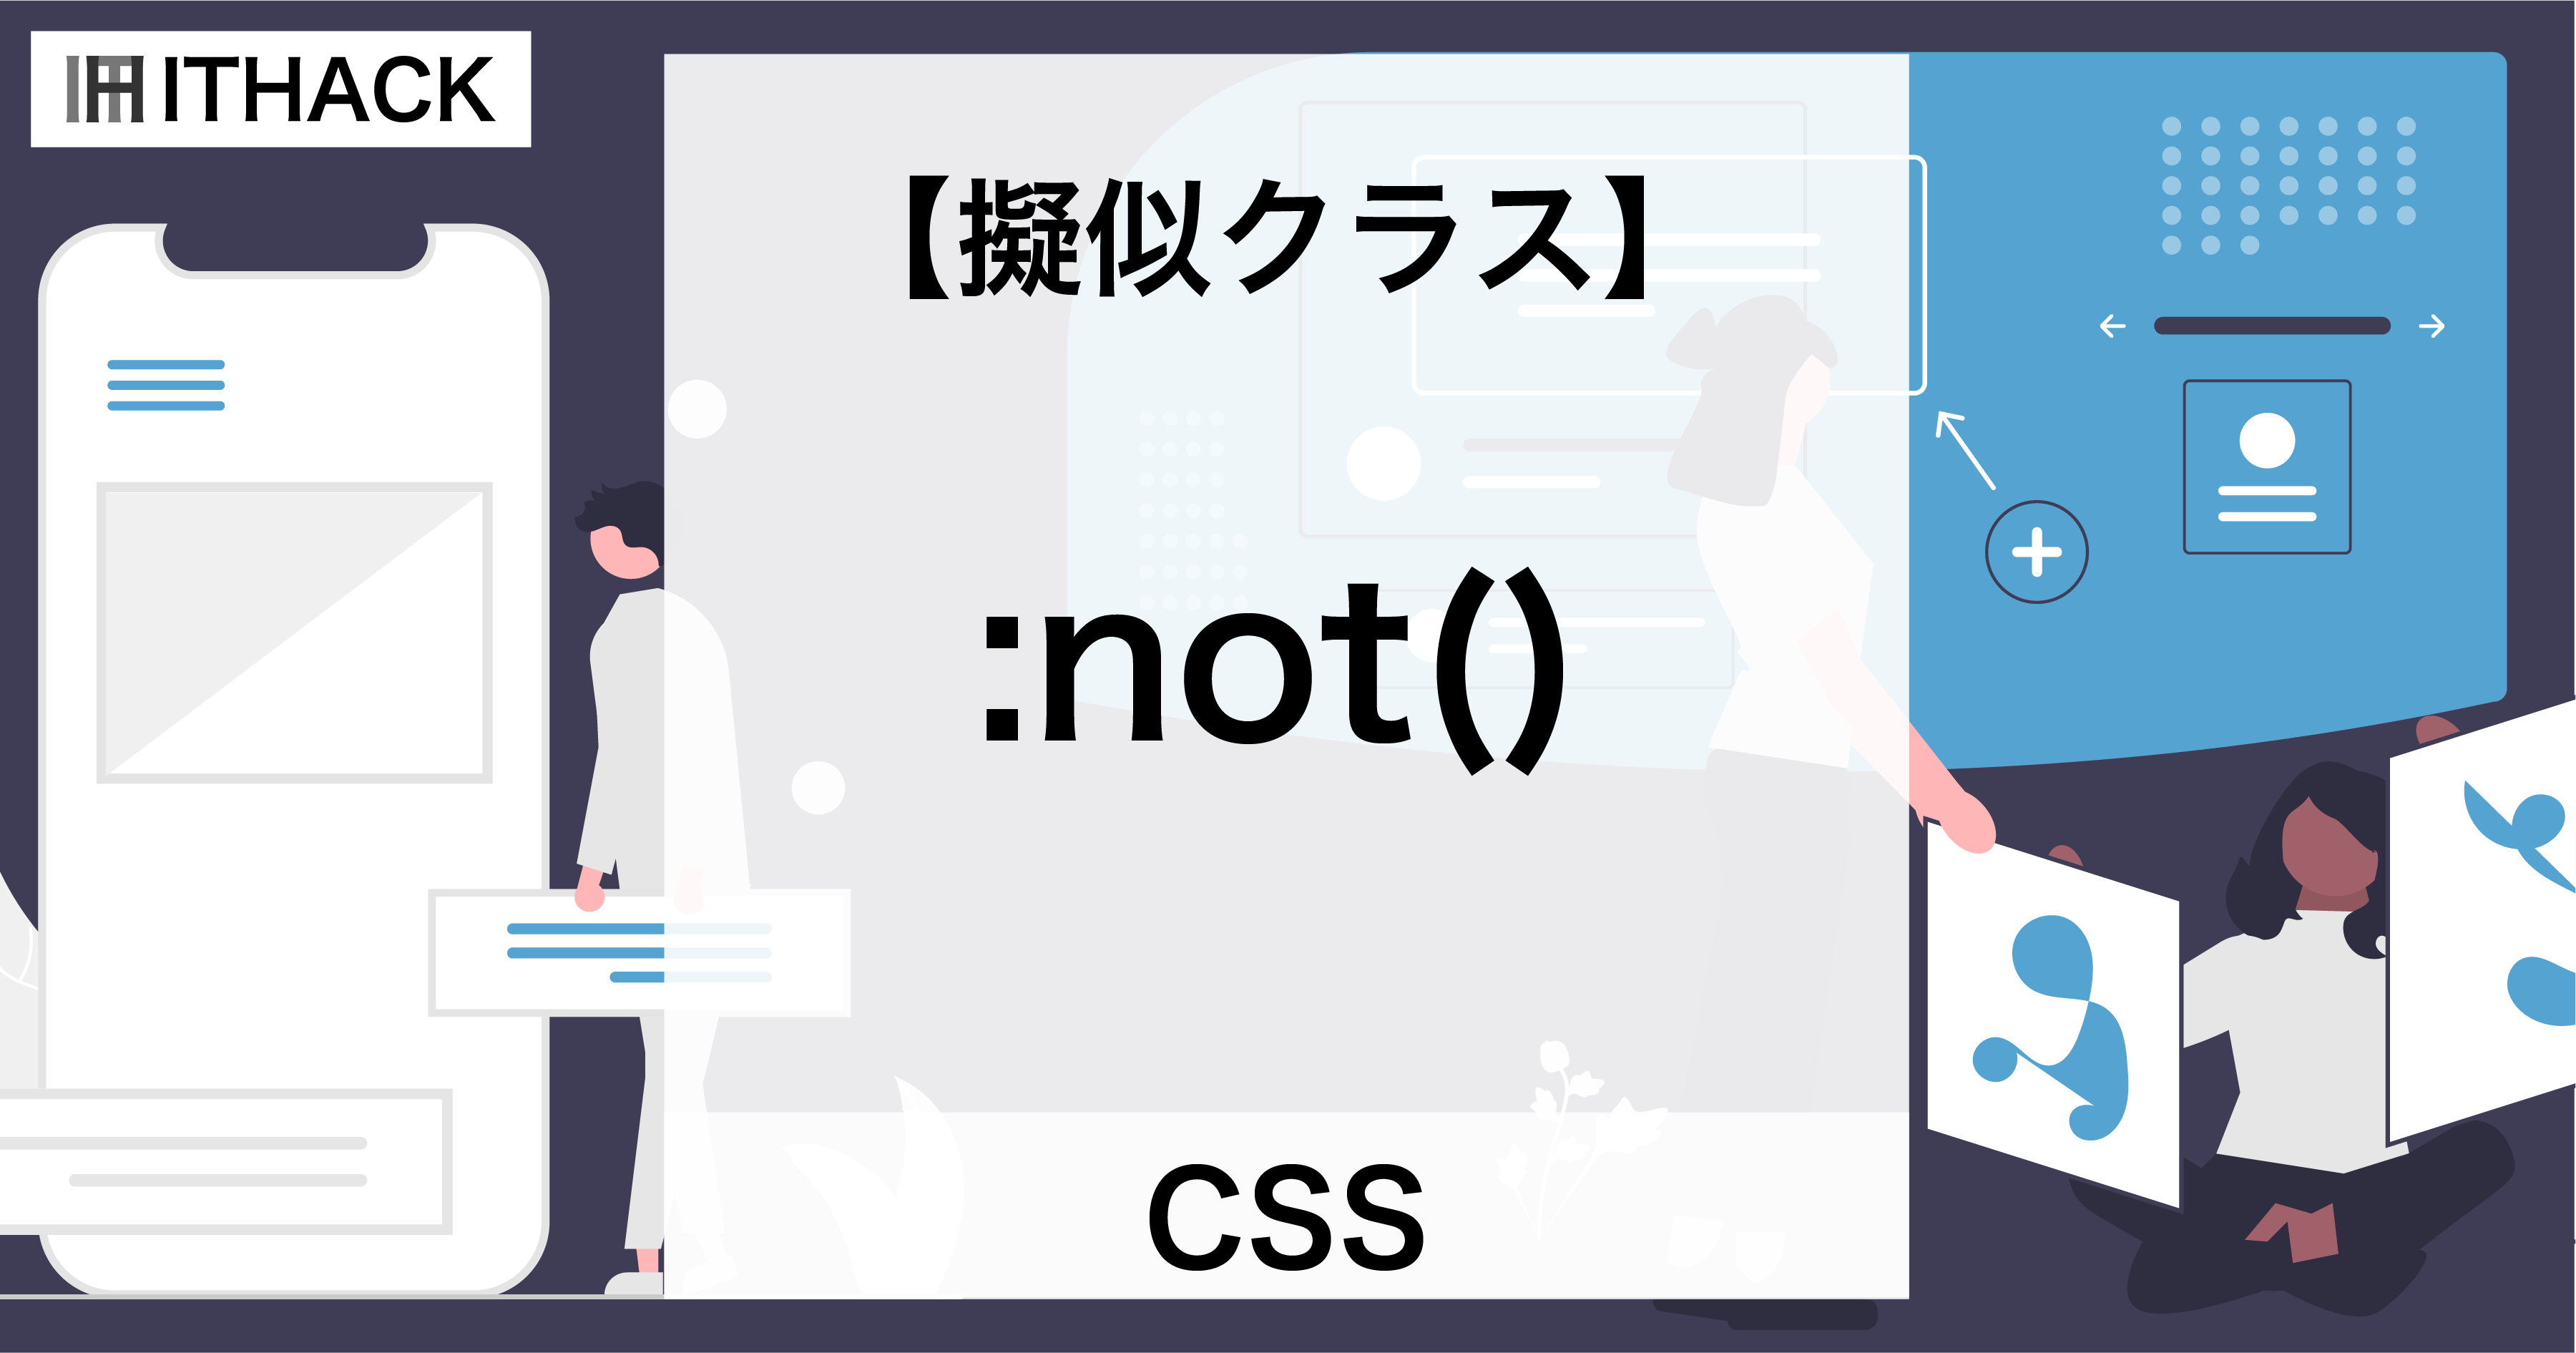 【CSS】:not（擬似クラス） - マッチしない要素